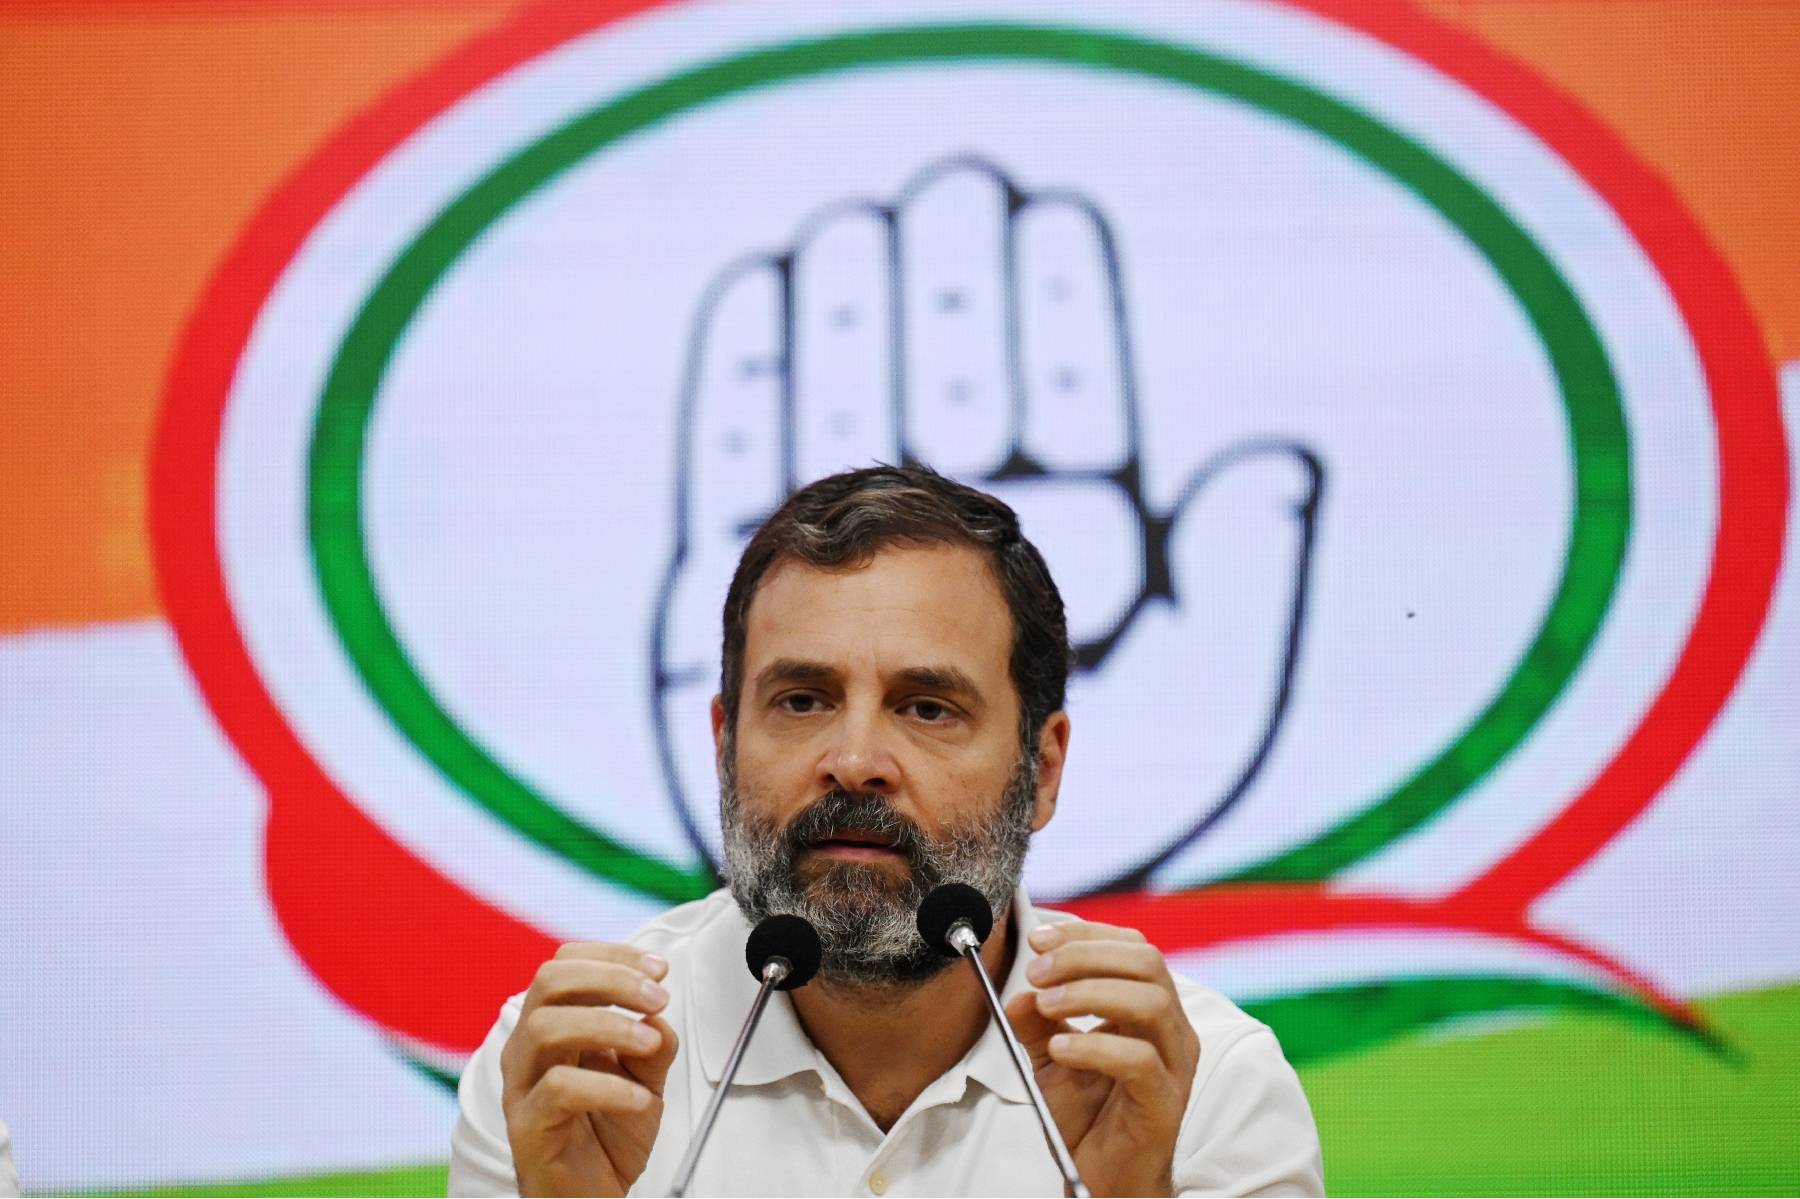 Inde: l'opposant Rahul Gandhi impute à Modi son expulsion du Parlement